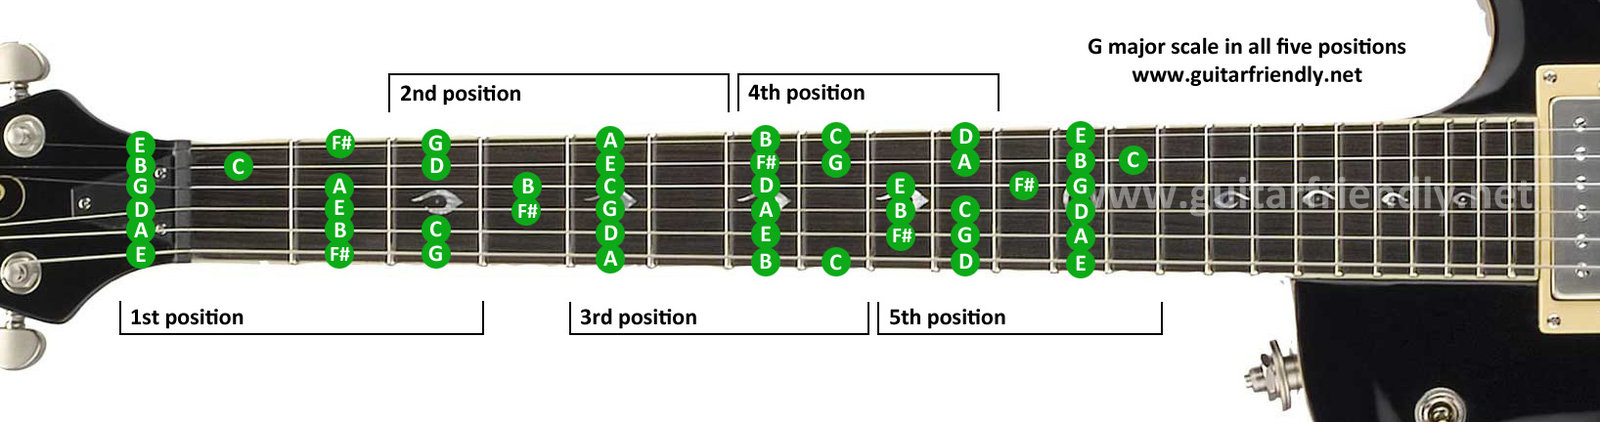 g-major-guitar-scale-fretboard.jpg